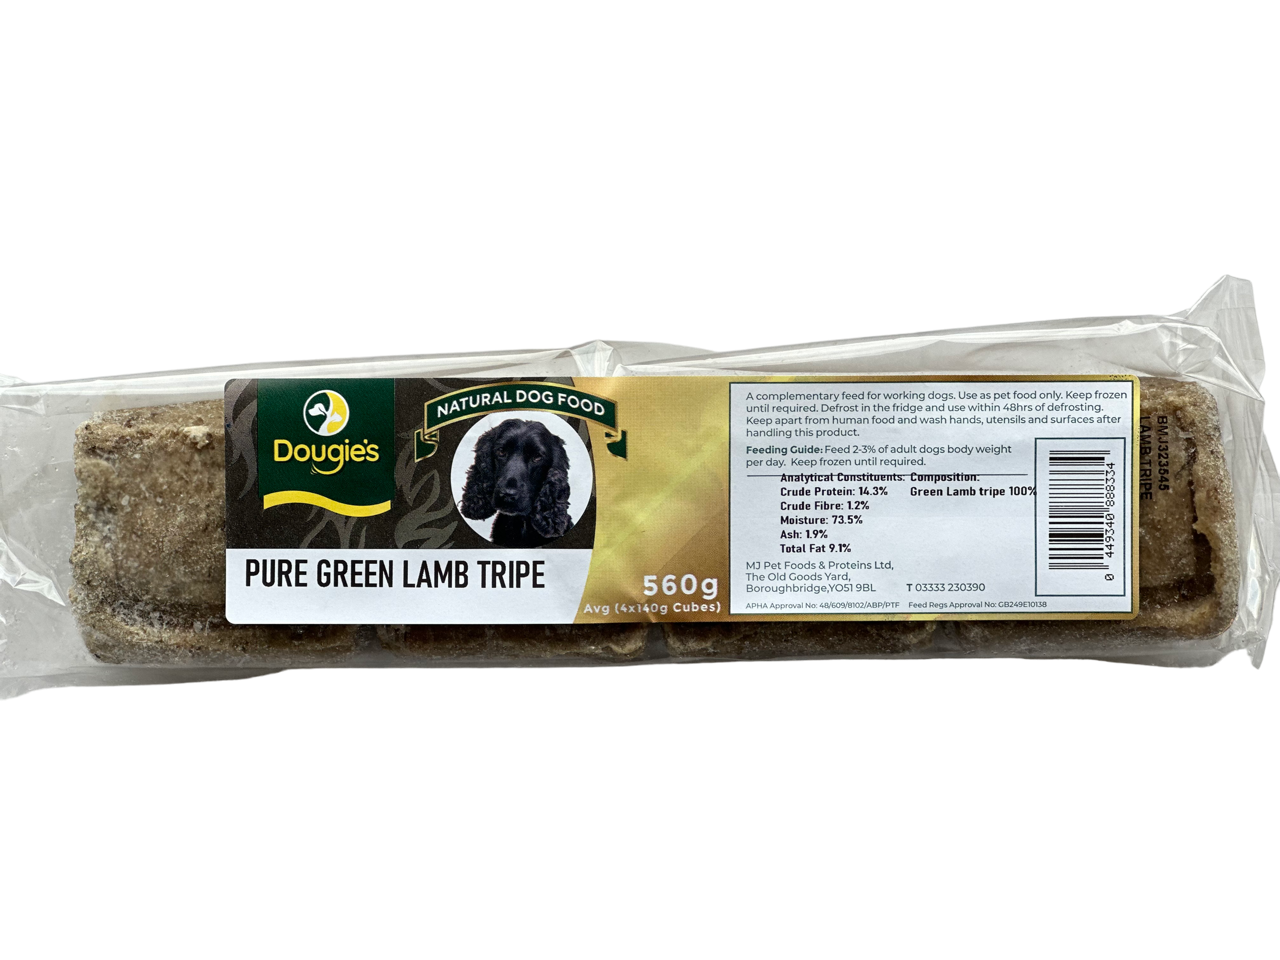 Dougies Pure Green Lamb Tripe 560g